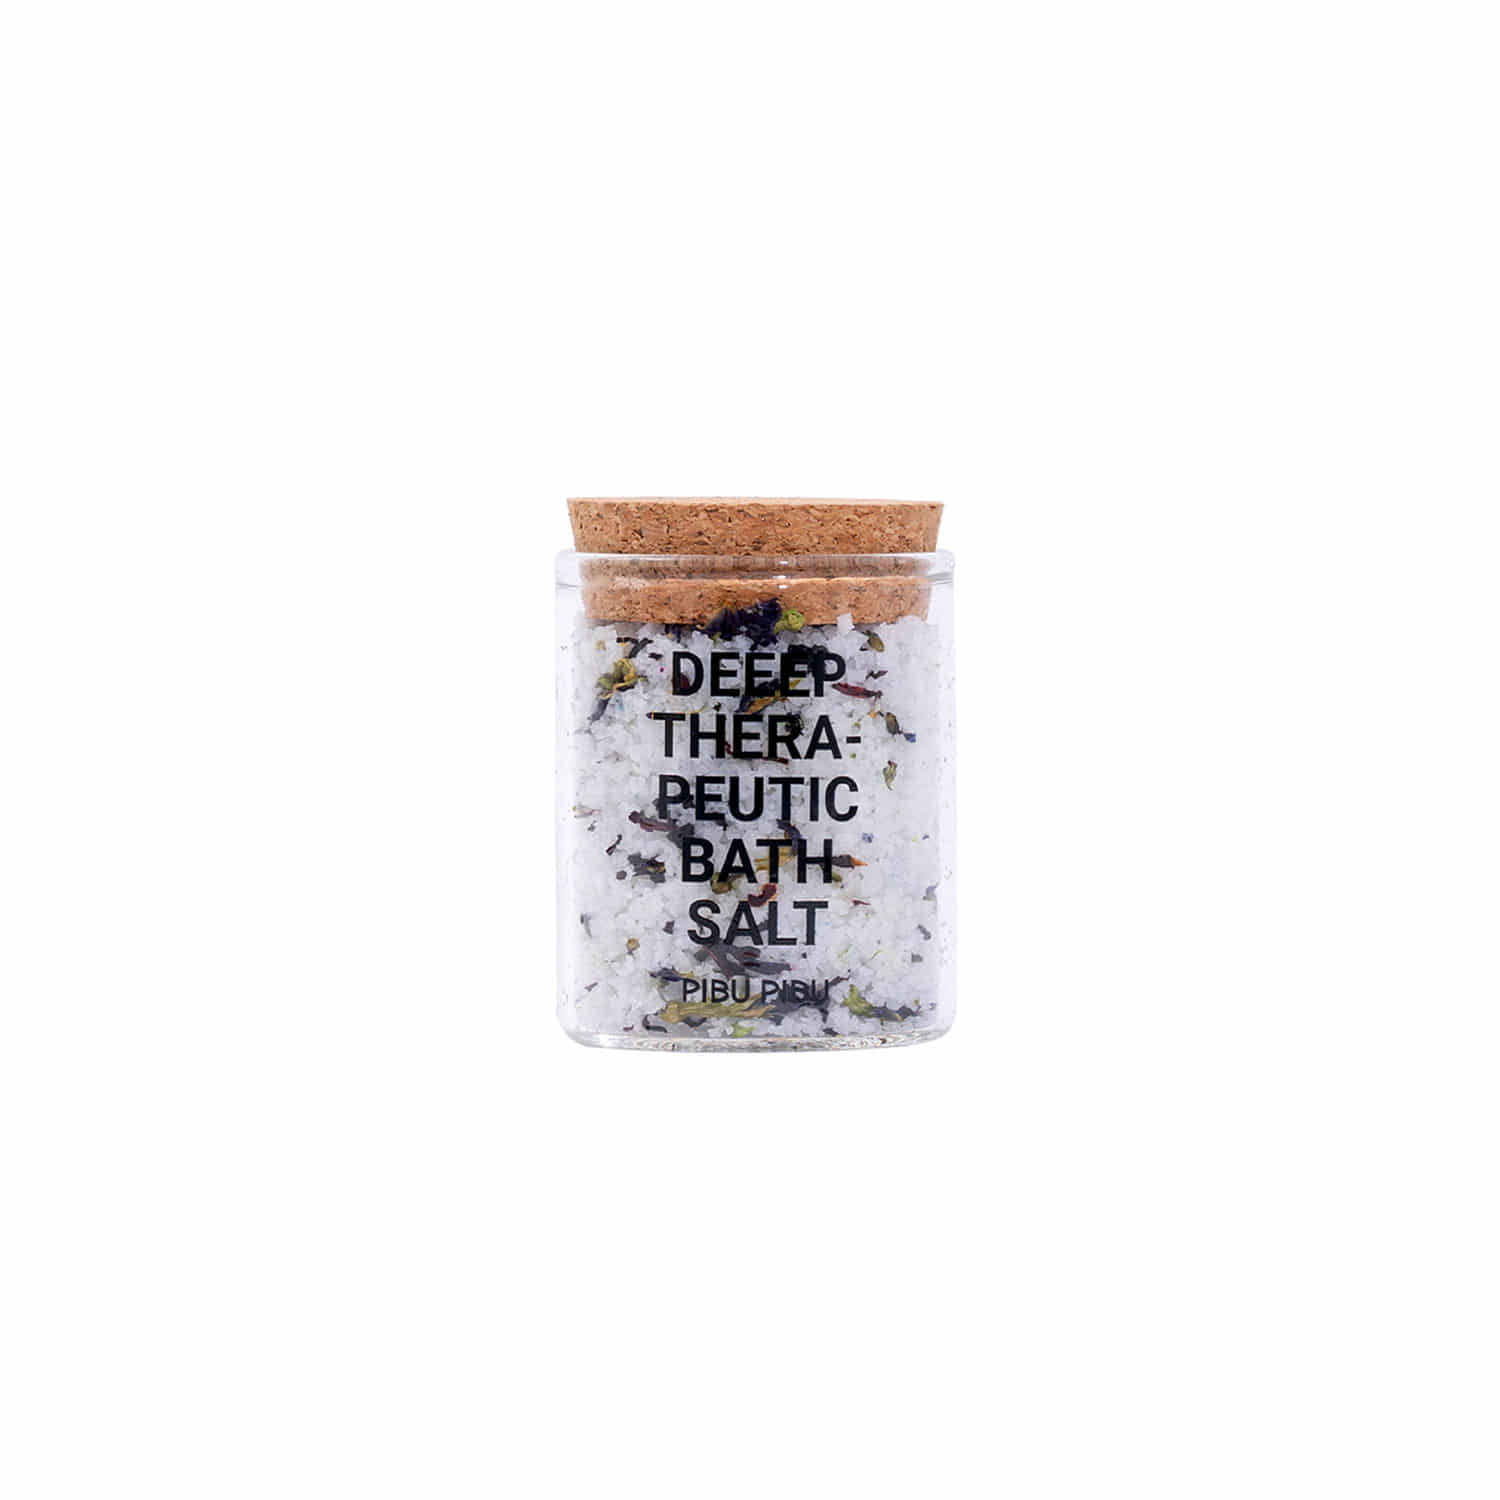 Thera-peutic Bath salt, Deep sleep 130